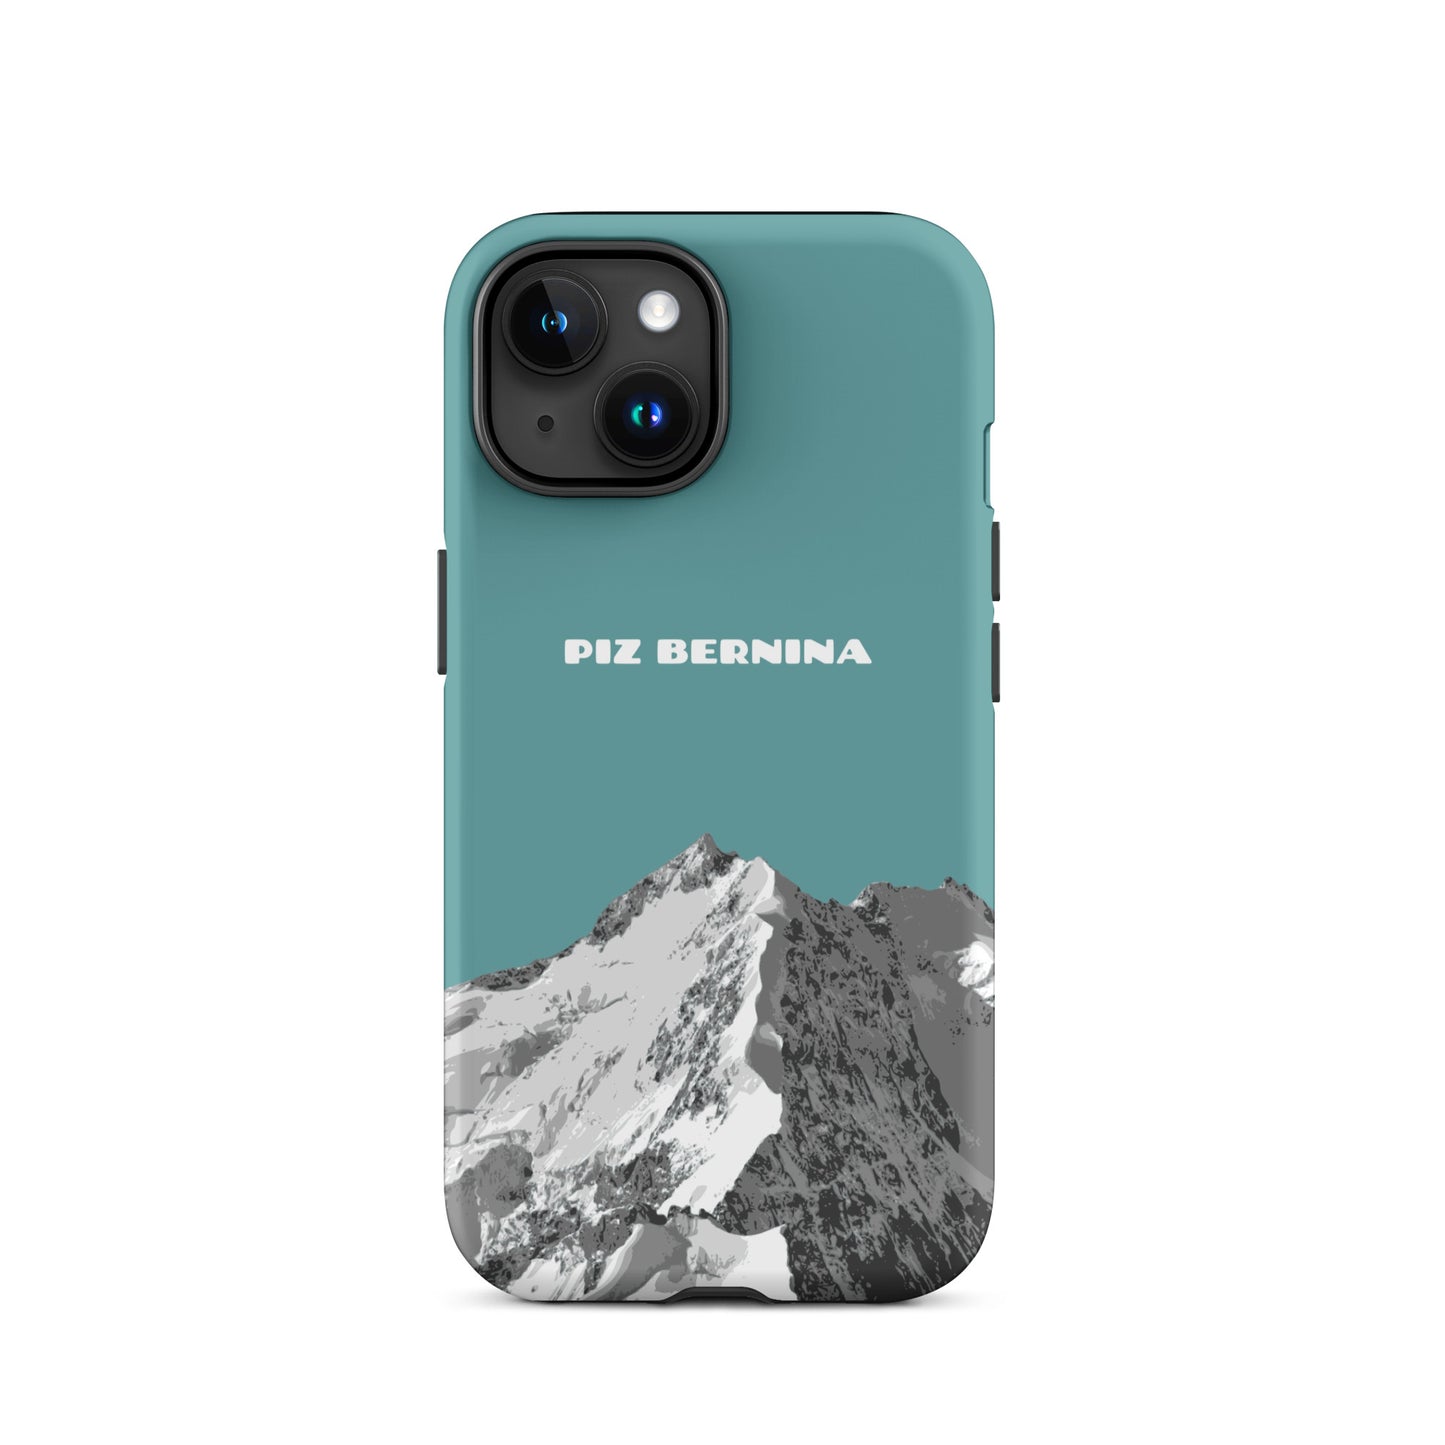 Hülle für das iPhone 15 von Apple in der Farbe Kadettenblau, dass den Piz Bernina in Graubünden zeigt.